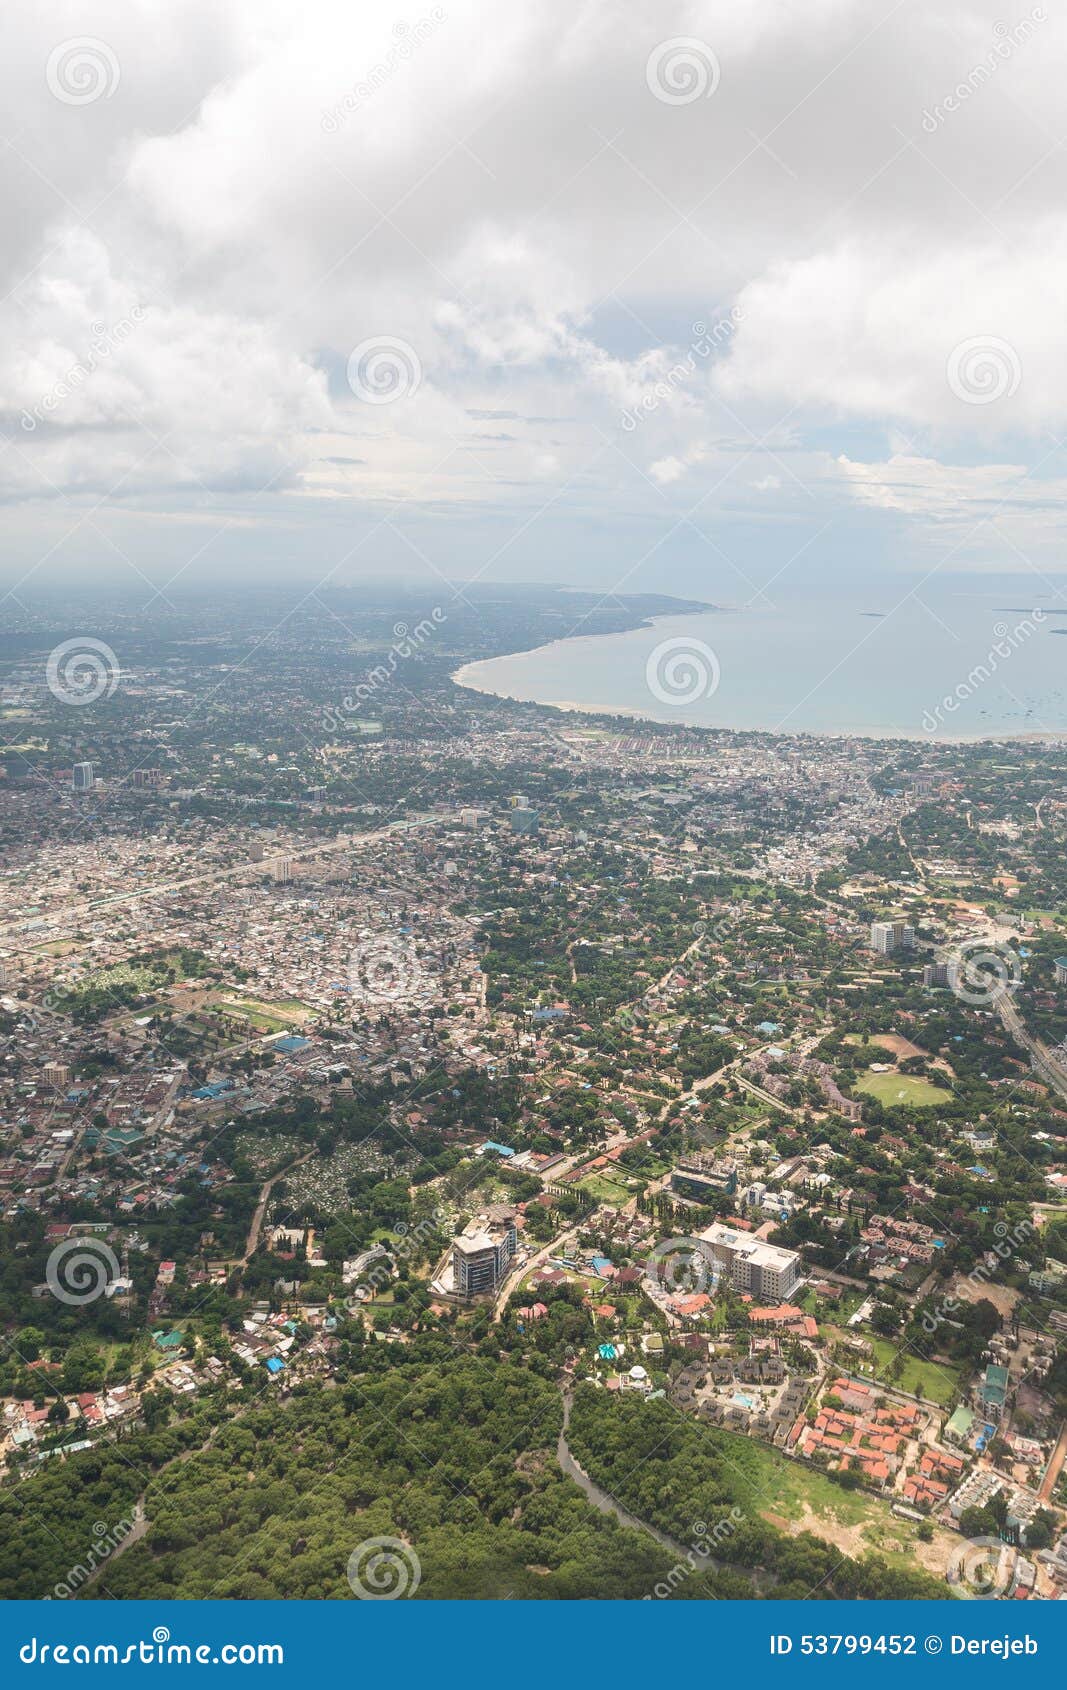 aerial view of dar es salaam